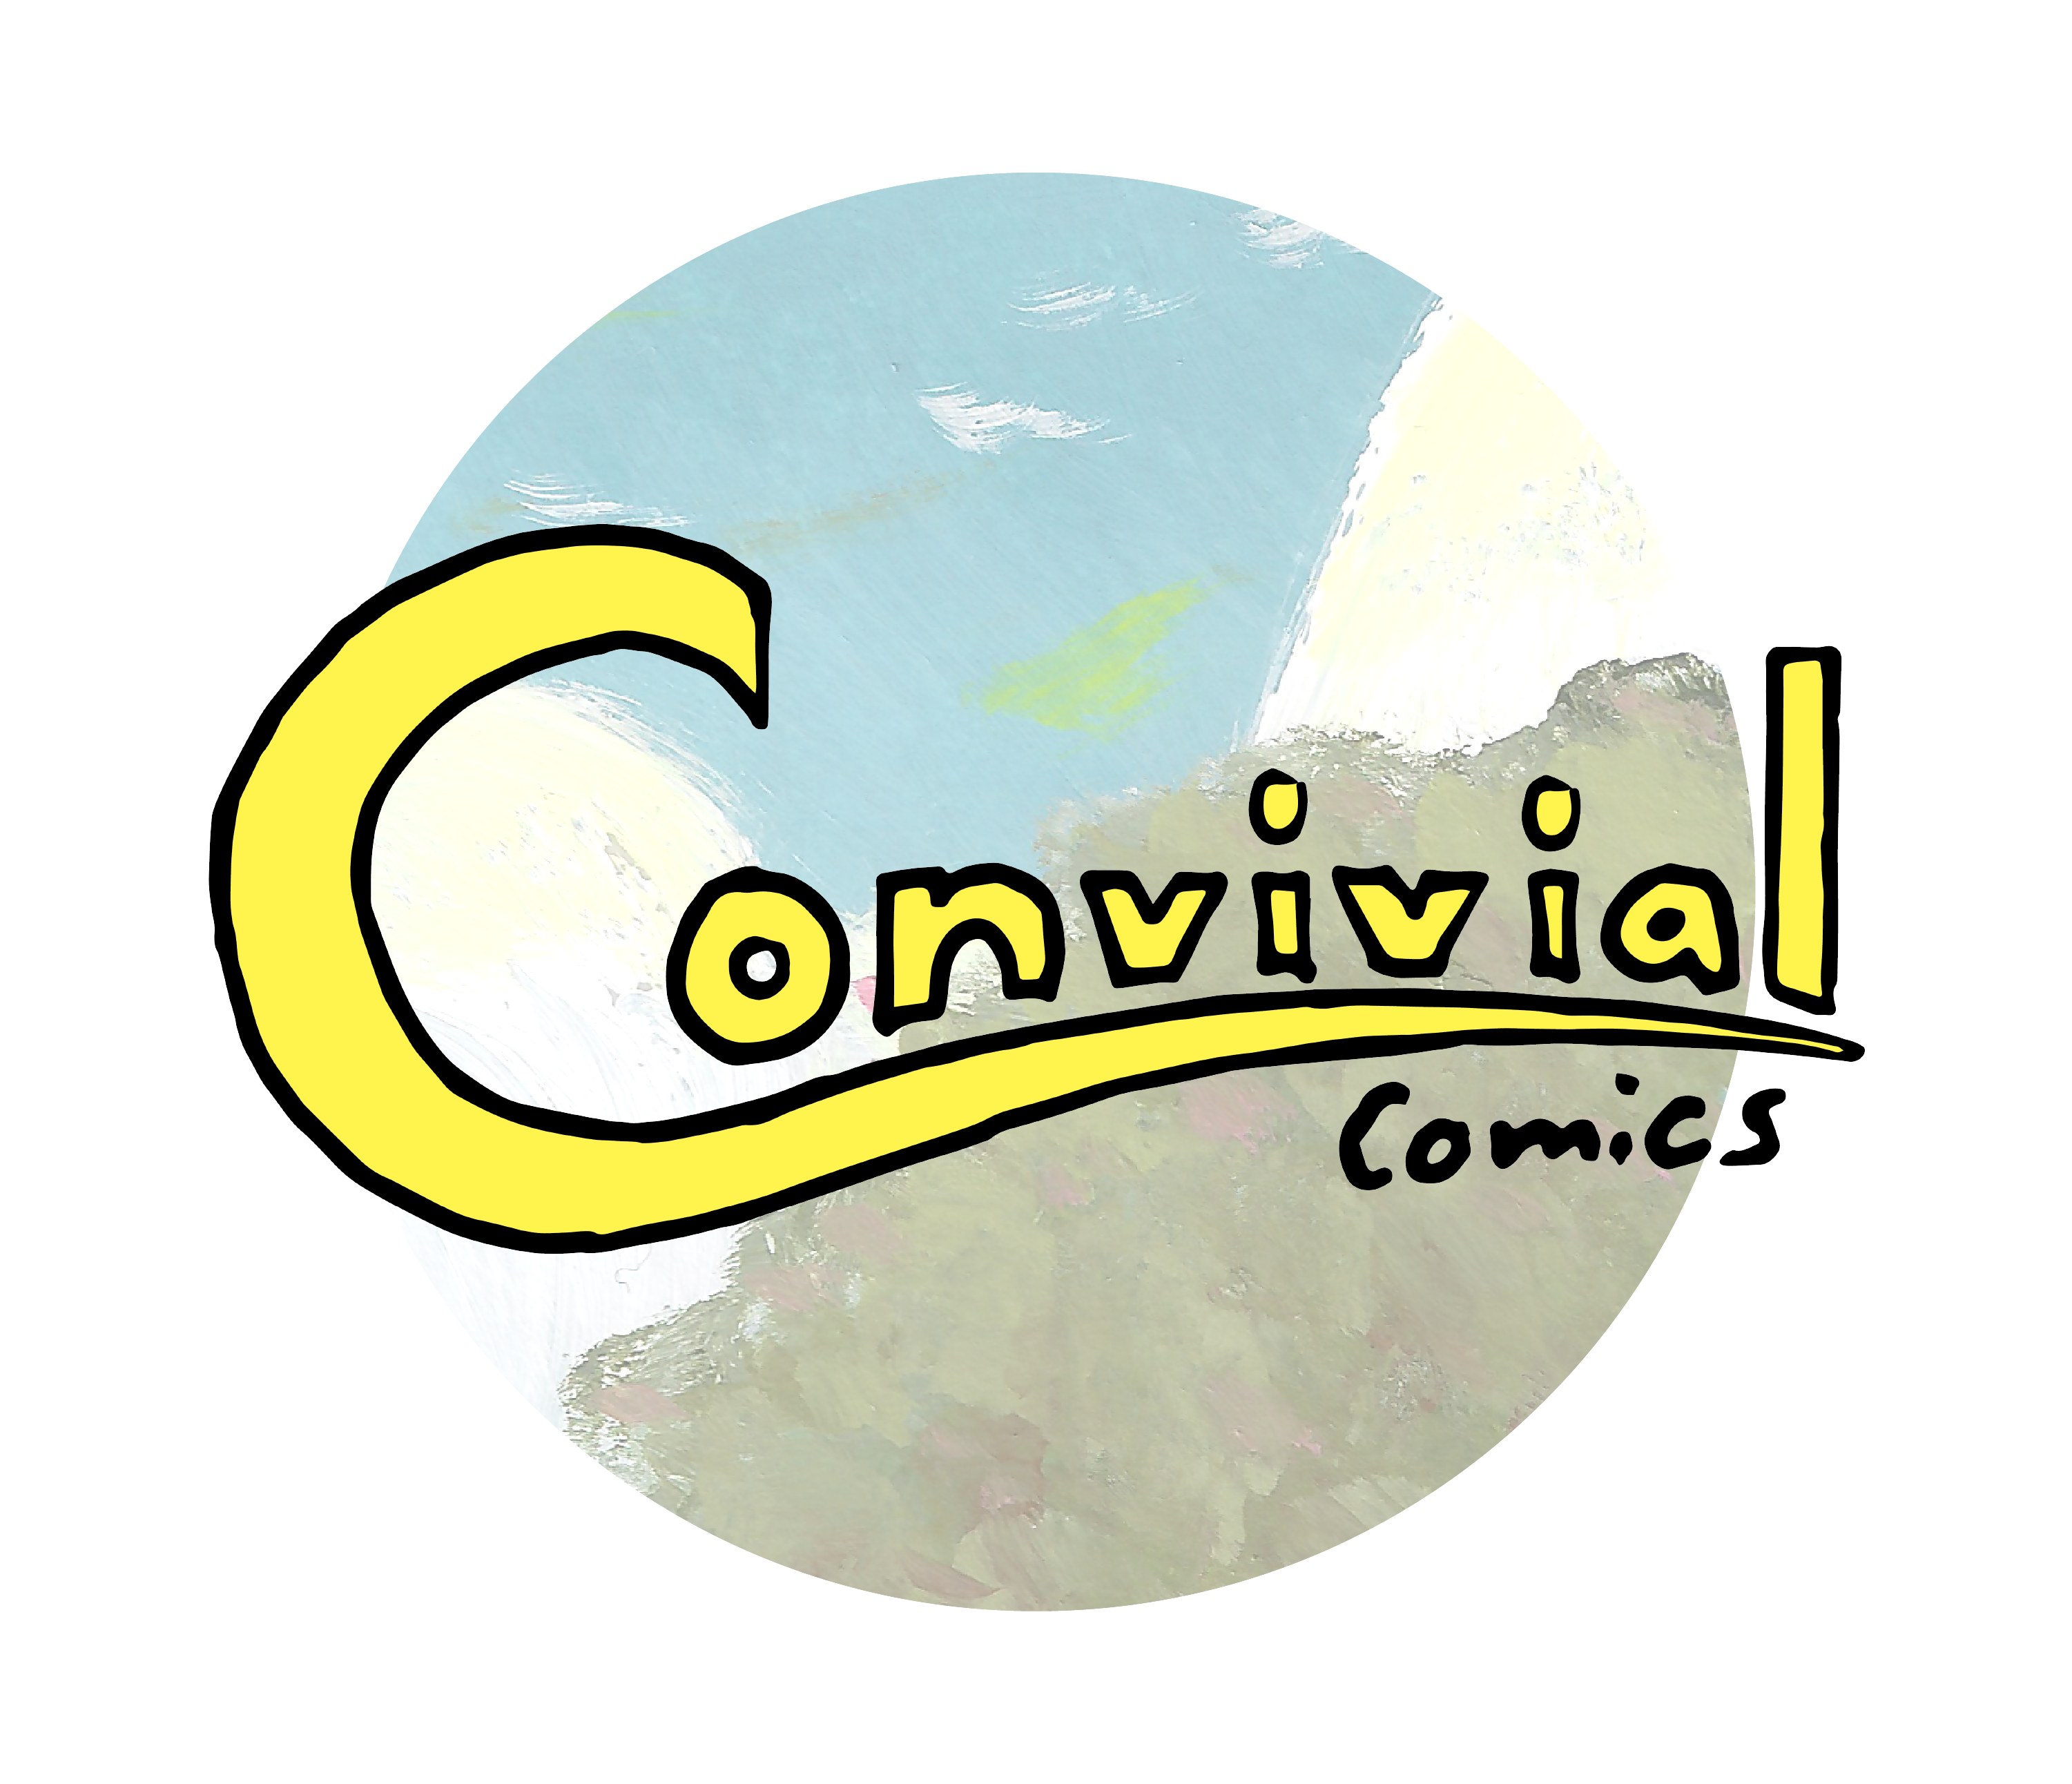 Convivial Comics